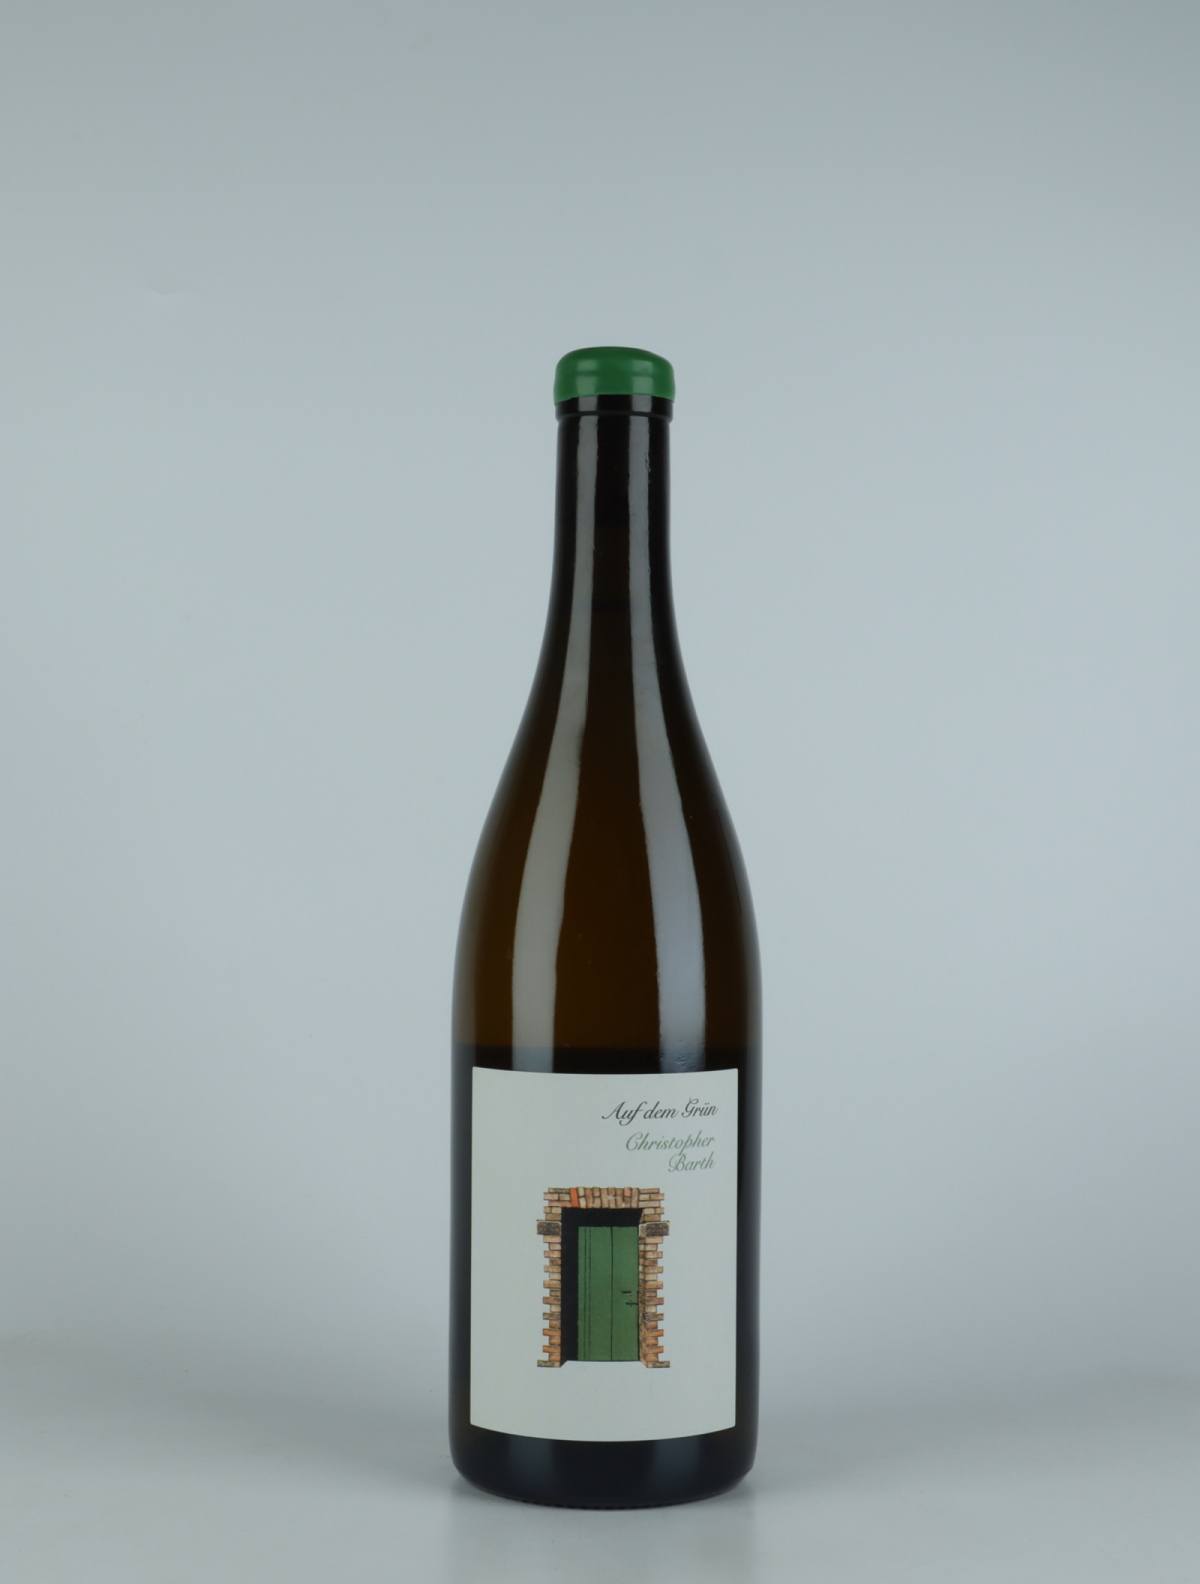 A bottle  Auf dem Grün Riesling White wine from Christopher Barth, Rheinhessen in Germany